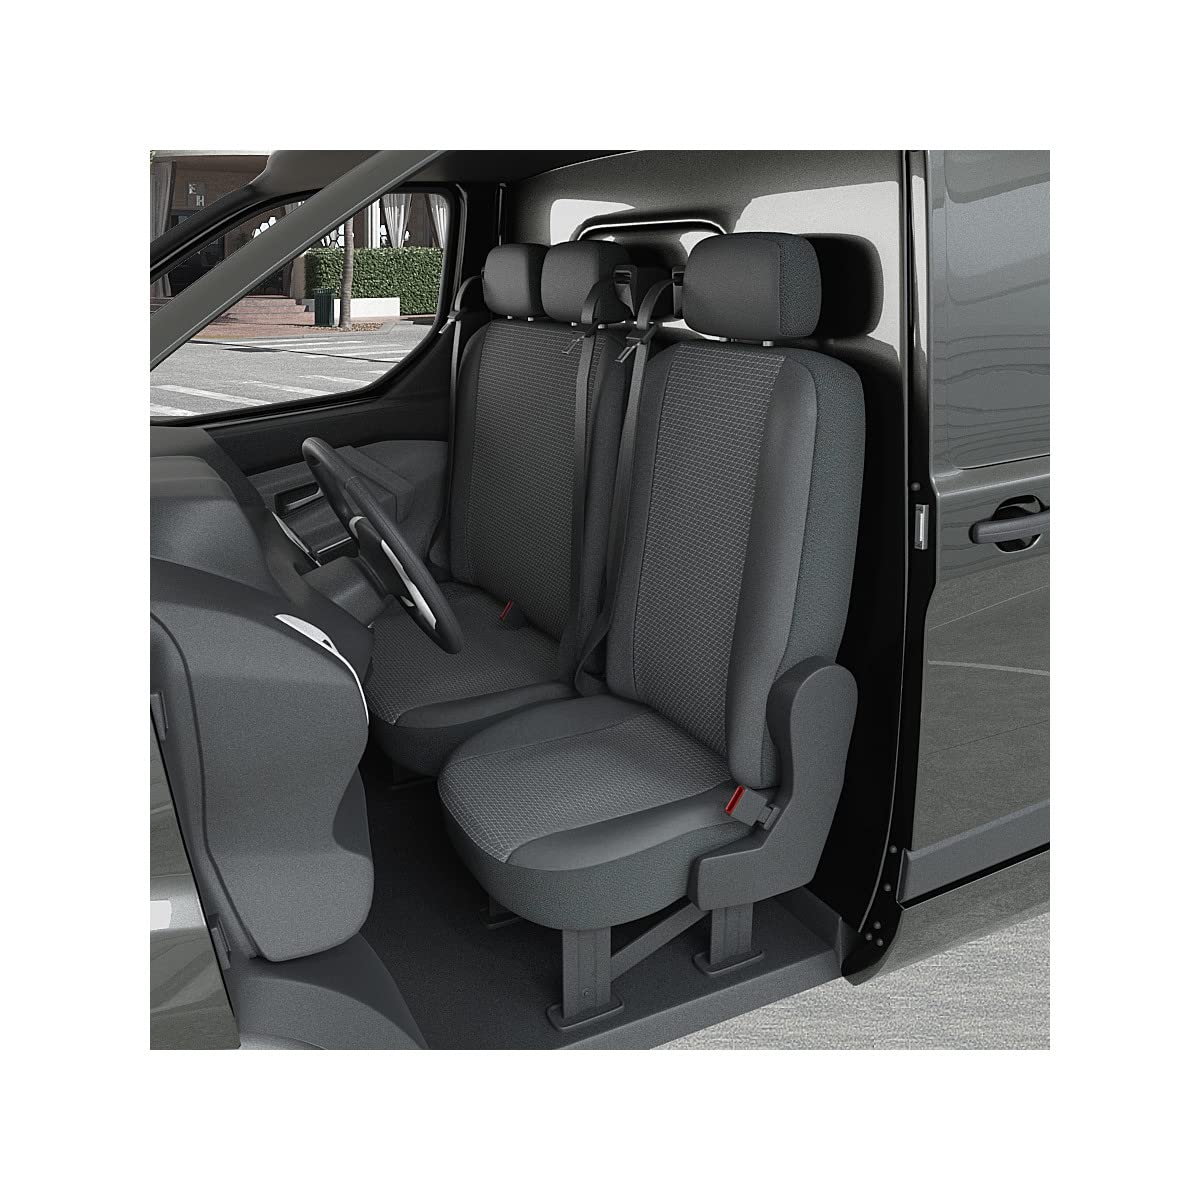 DBS 1013172 Sitzbezug für Auto/Nutzfahrzeuge, Kunstleder, schnelle Montage, kompatibel mit Airbag-Isofix-1013172 von DBS